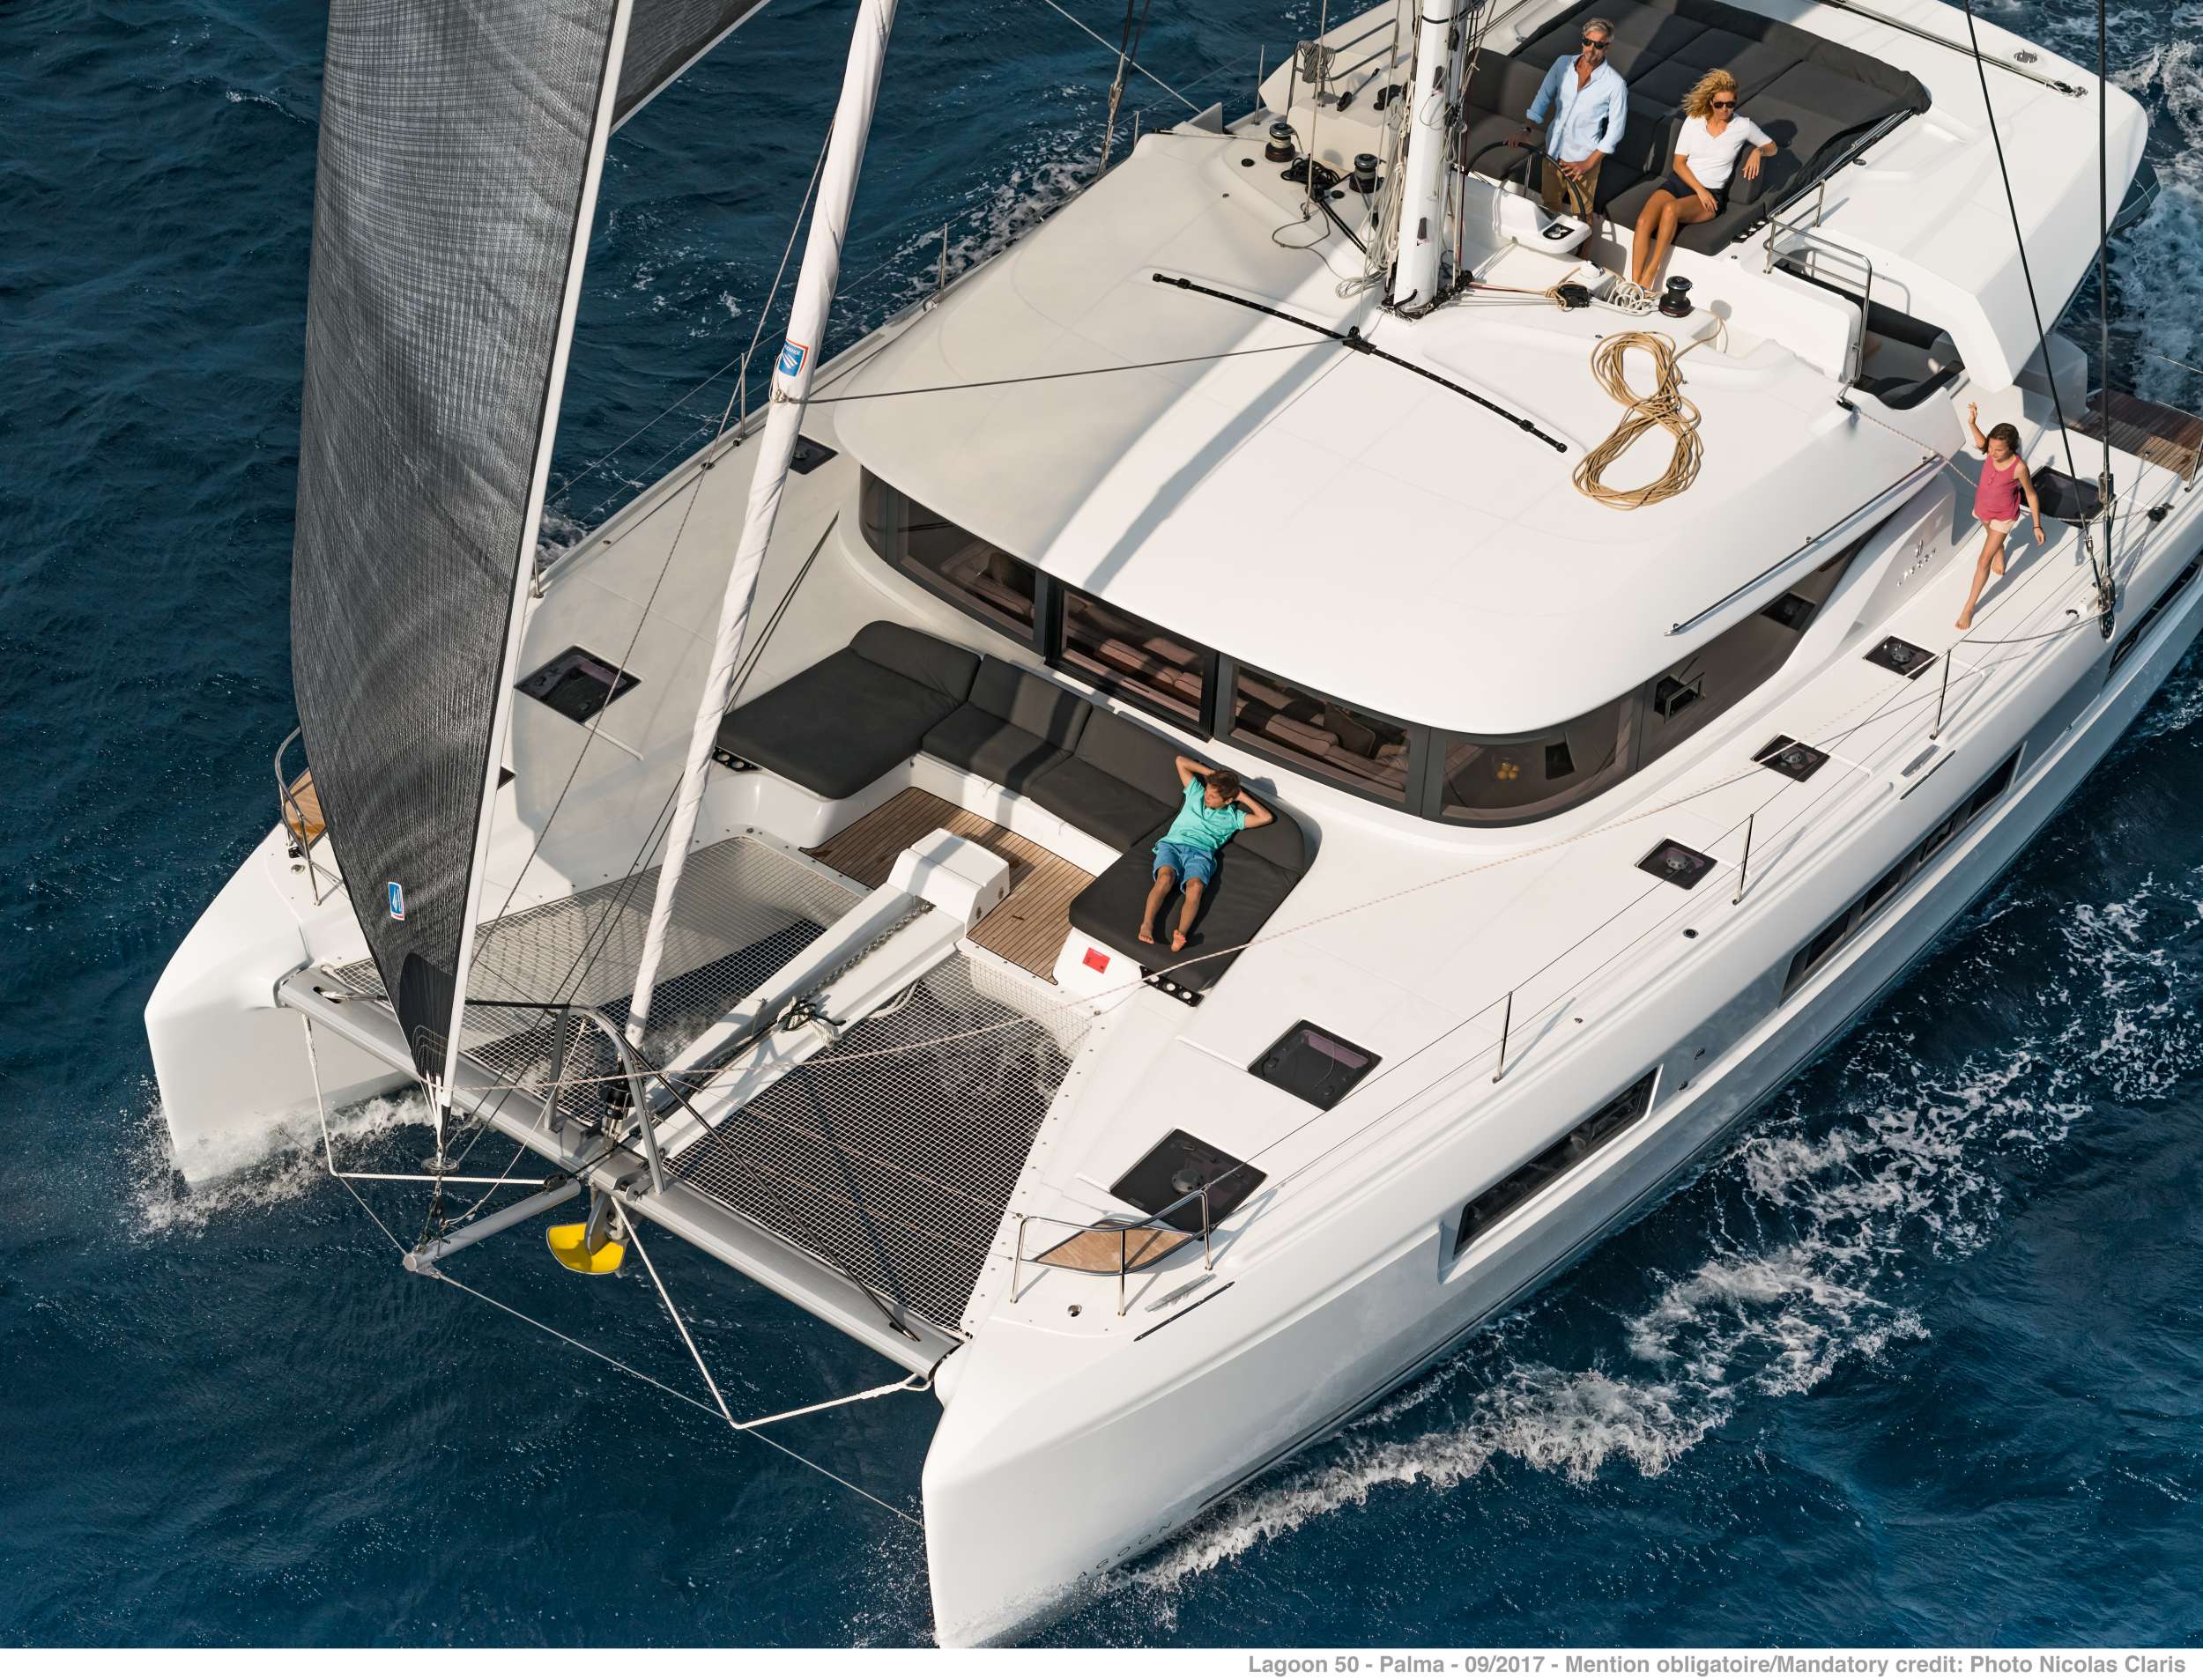 ONEIDA 2 - Yacht Charter Keramoti & Boat hire in Greece 6